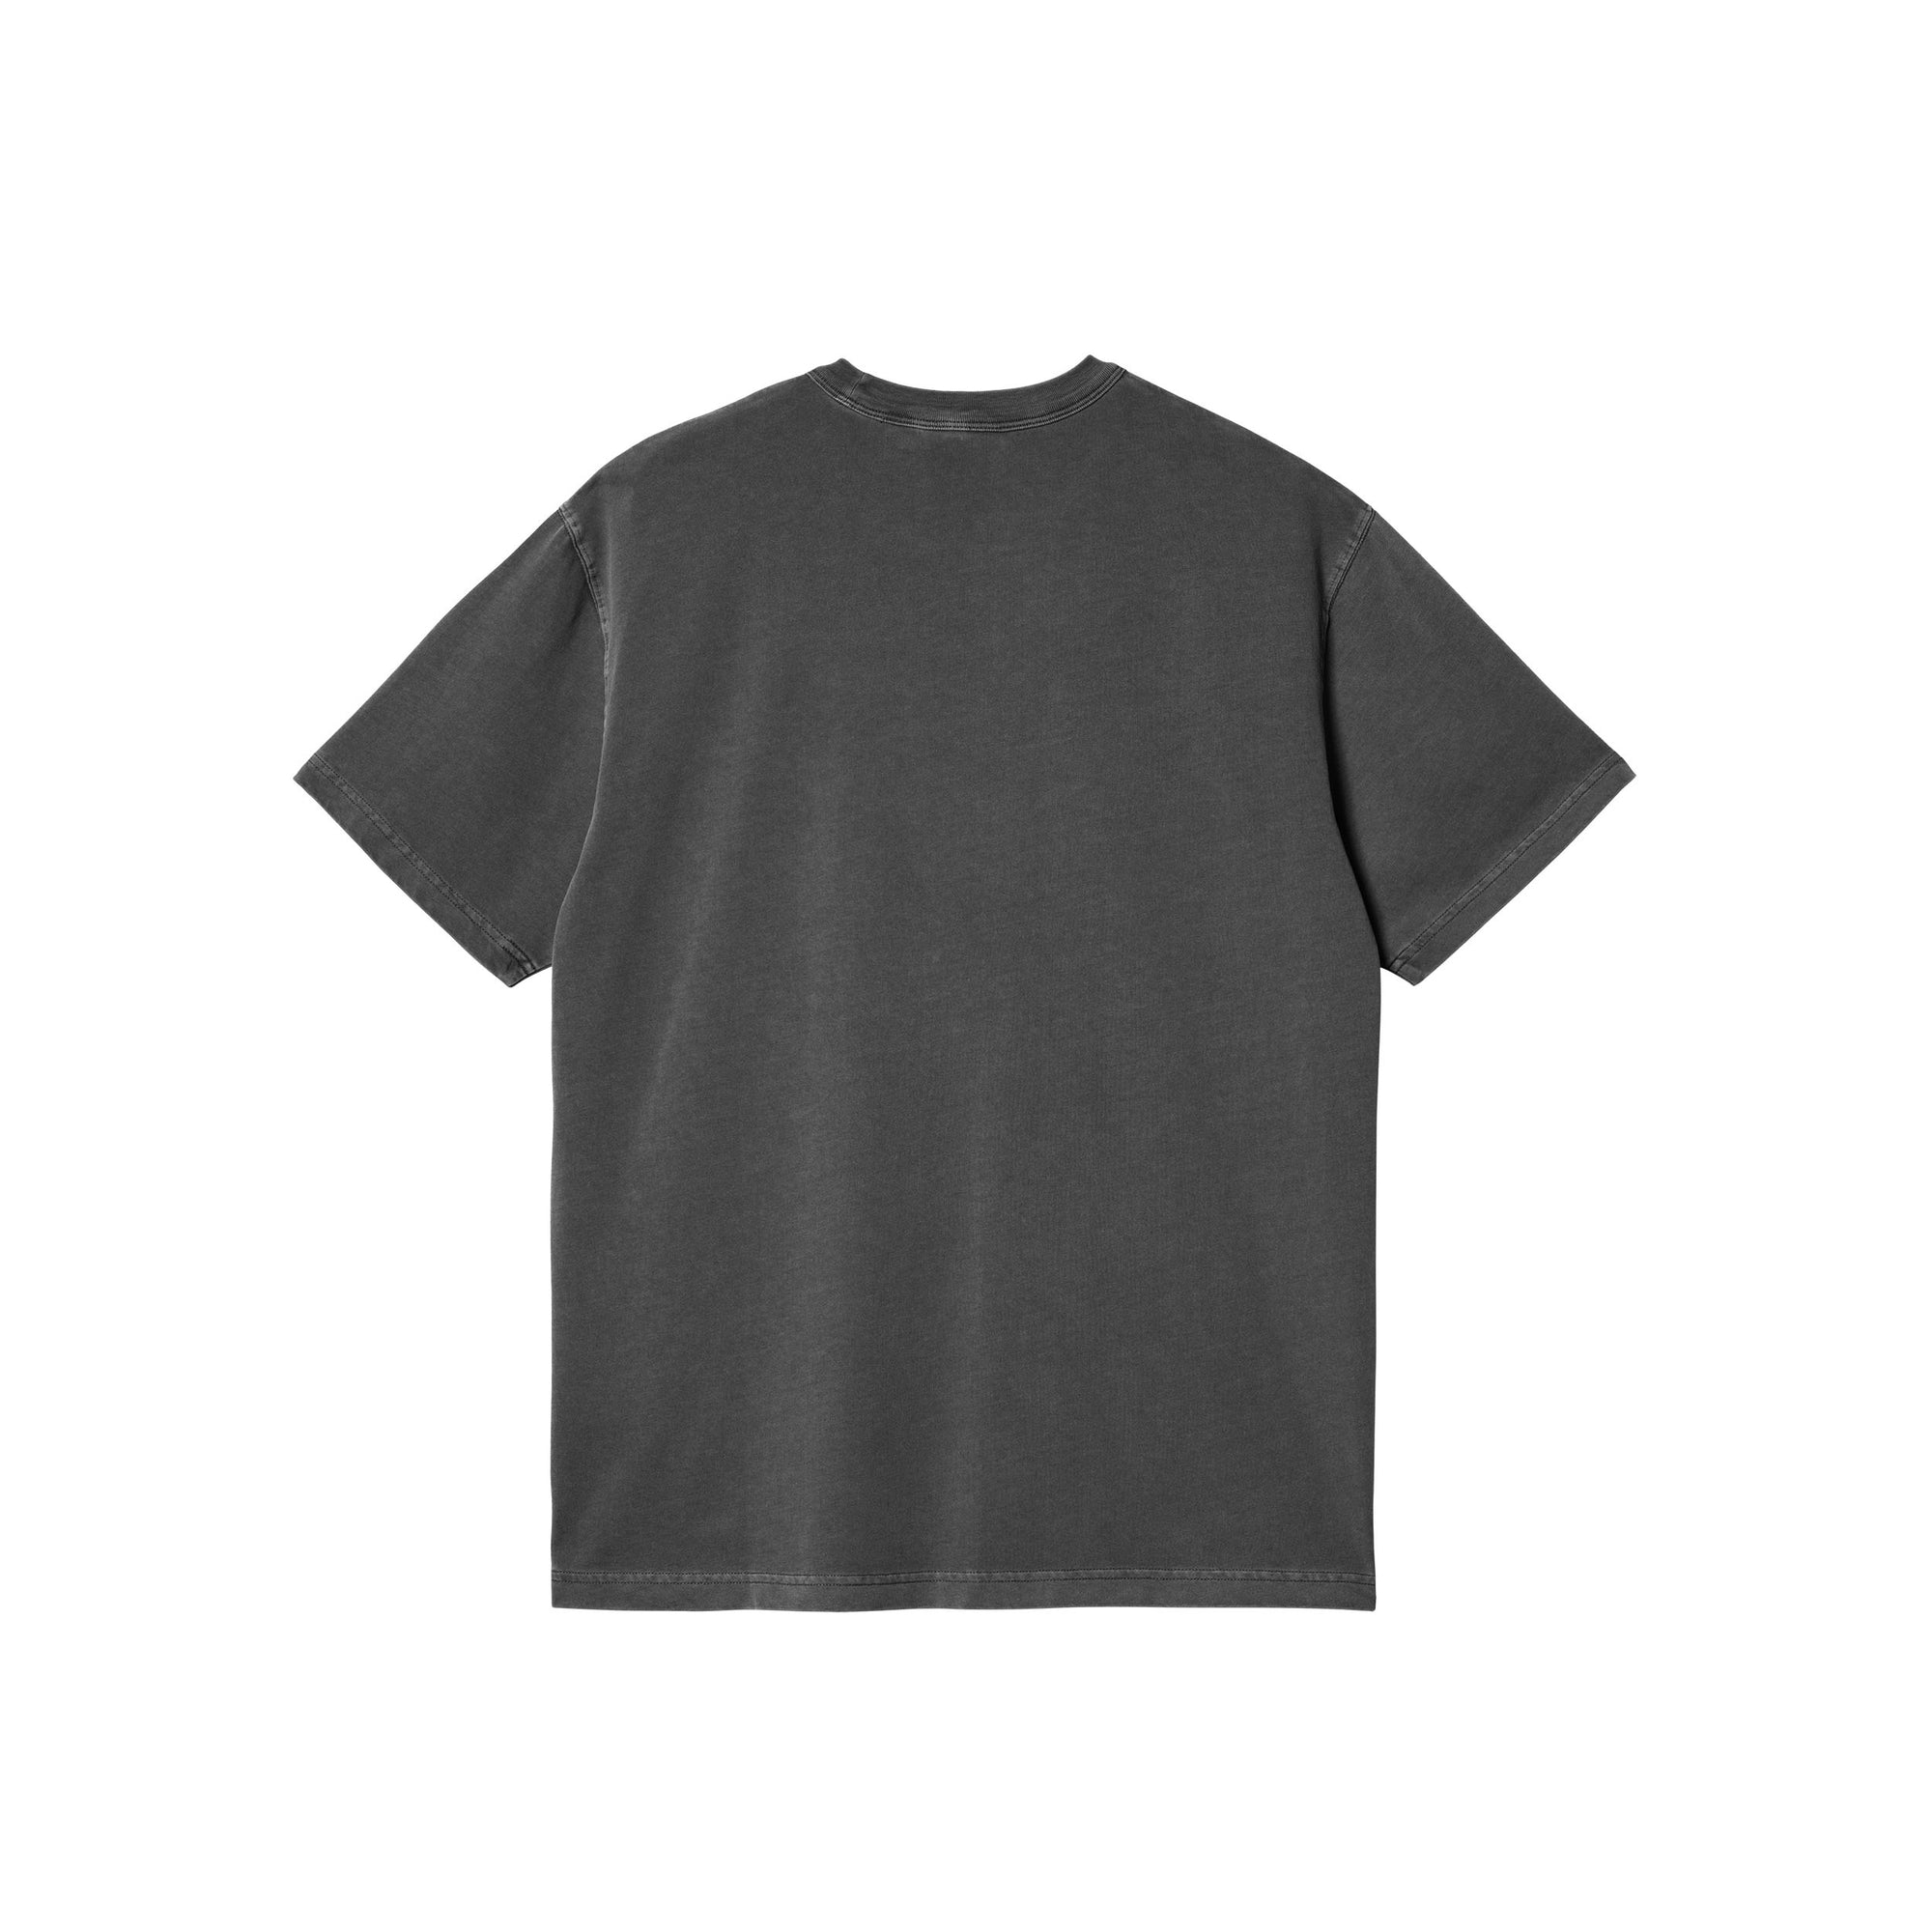 Carhartt WIP S/S Taos T-shirt (flint garment dyed) - Blue Mountain Store